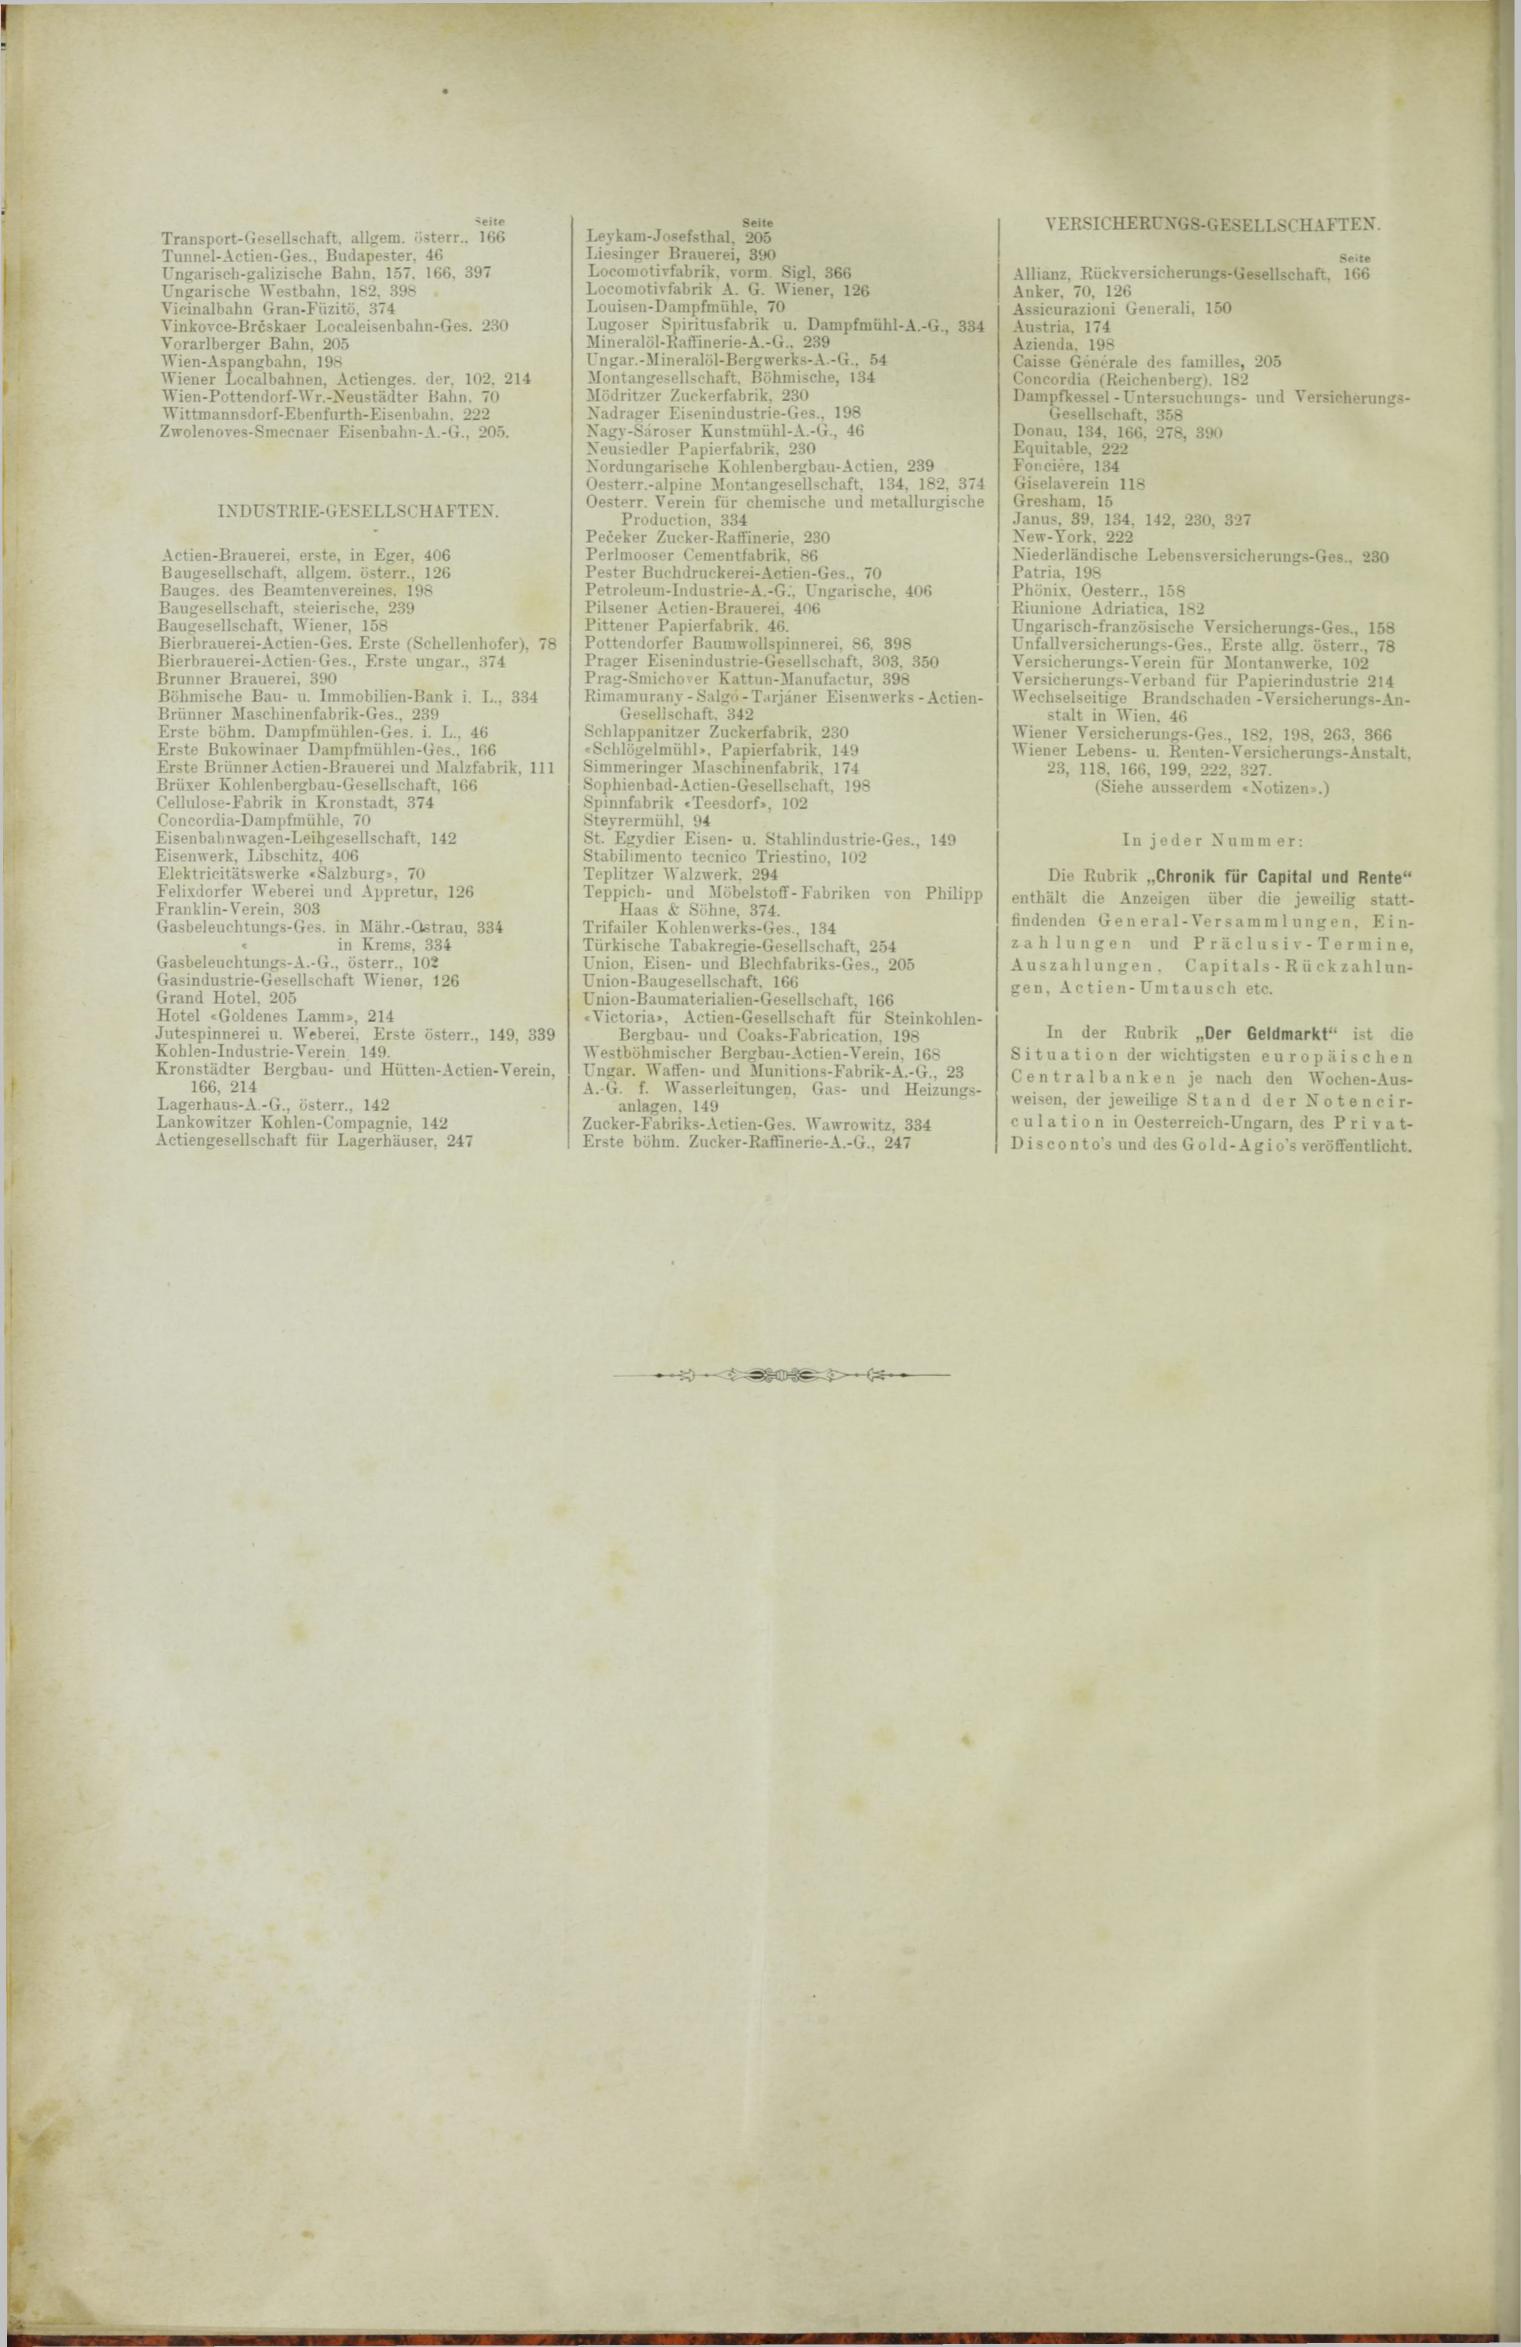 Der Tresor 27.09.1888 - Seite 12